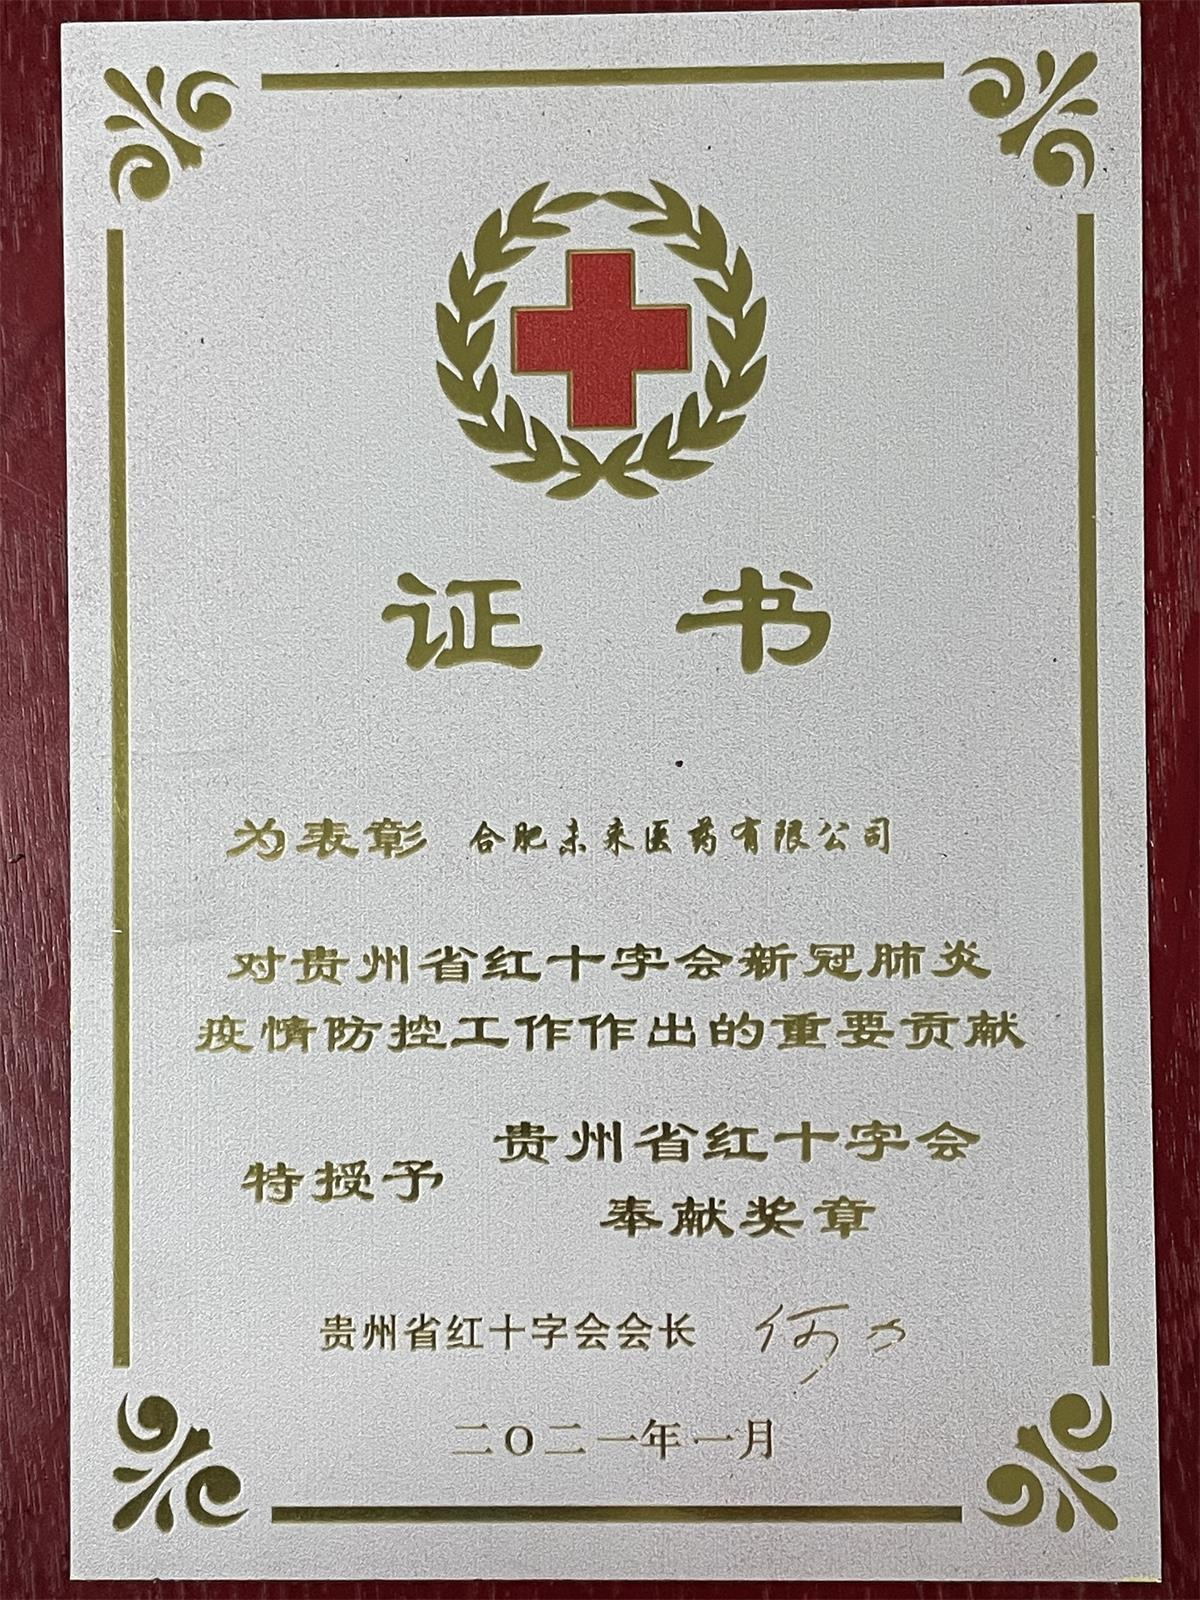 贵州省红十字会奉献奖章